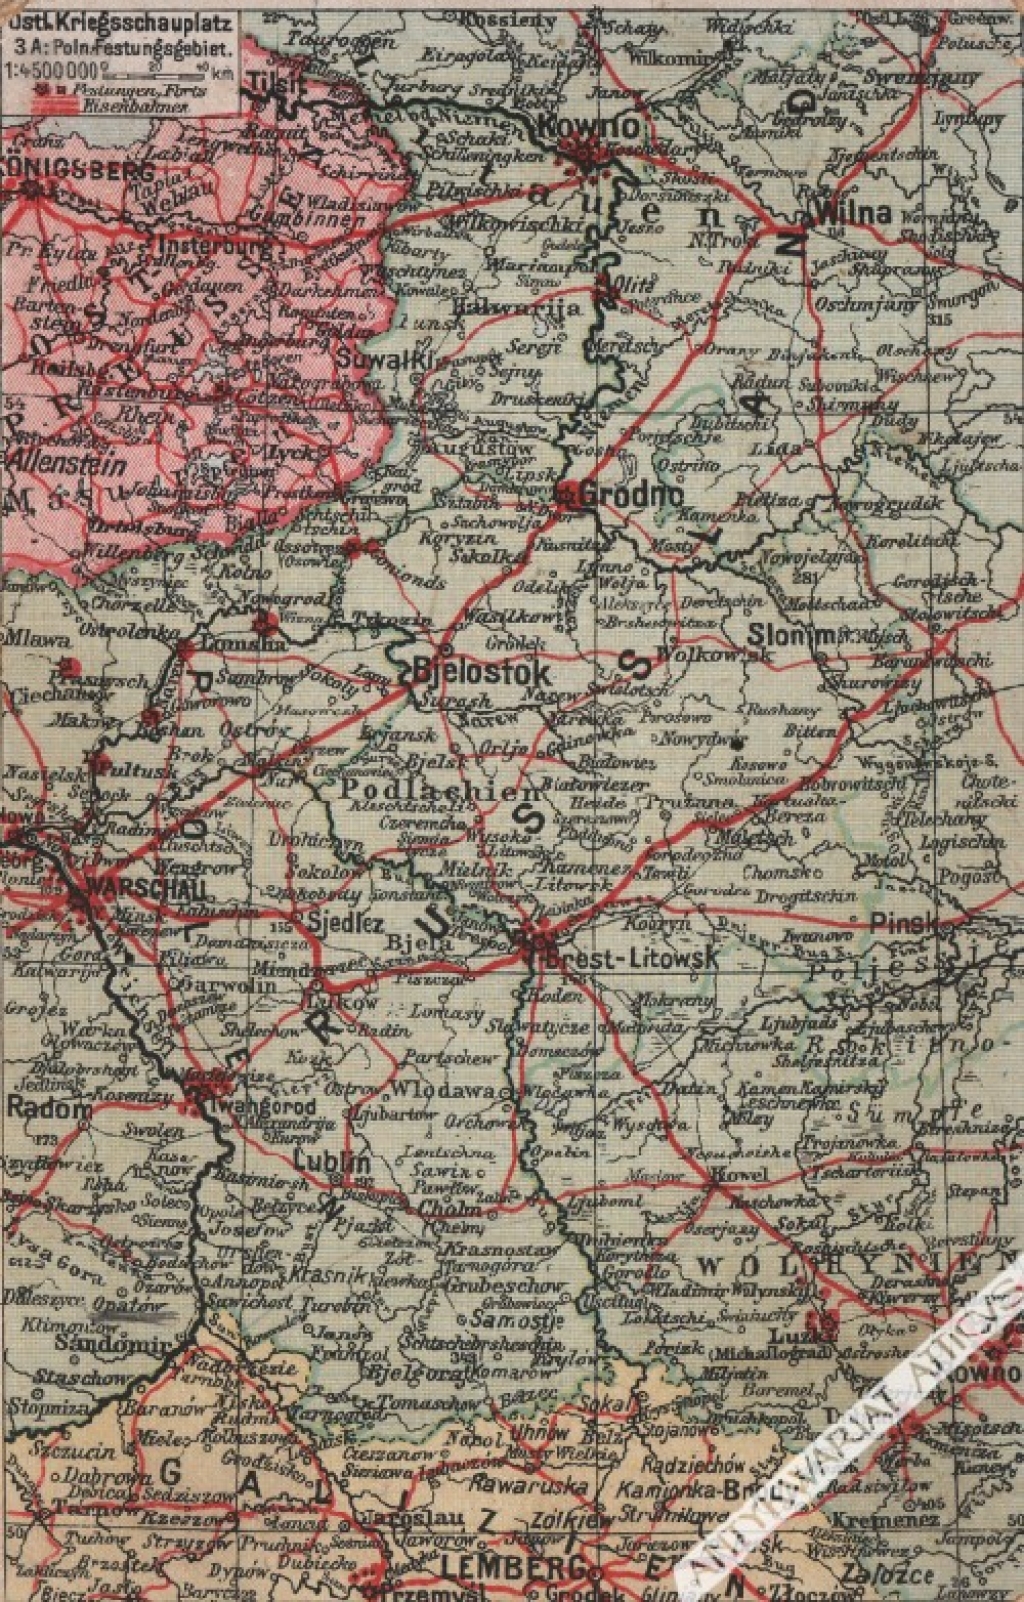 [pocztówka, ok. 1916] Ostl. Kriegsschauplatz 3 A: Poln. Festungsgebiet. [Front wschodni. Rejon umocniony na ziemiach polskich]